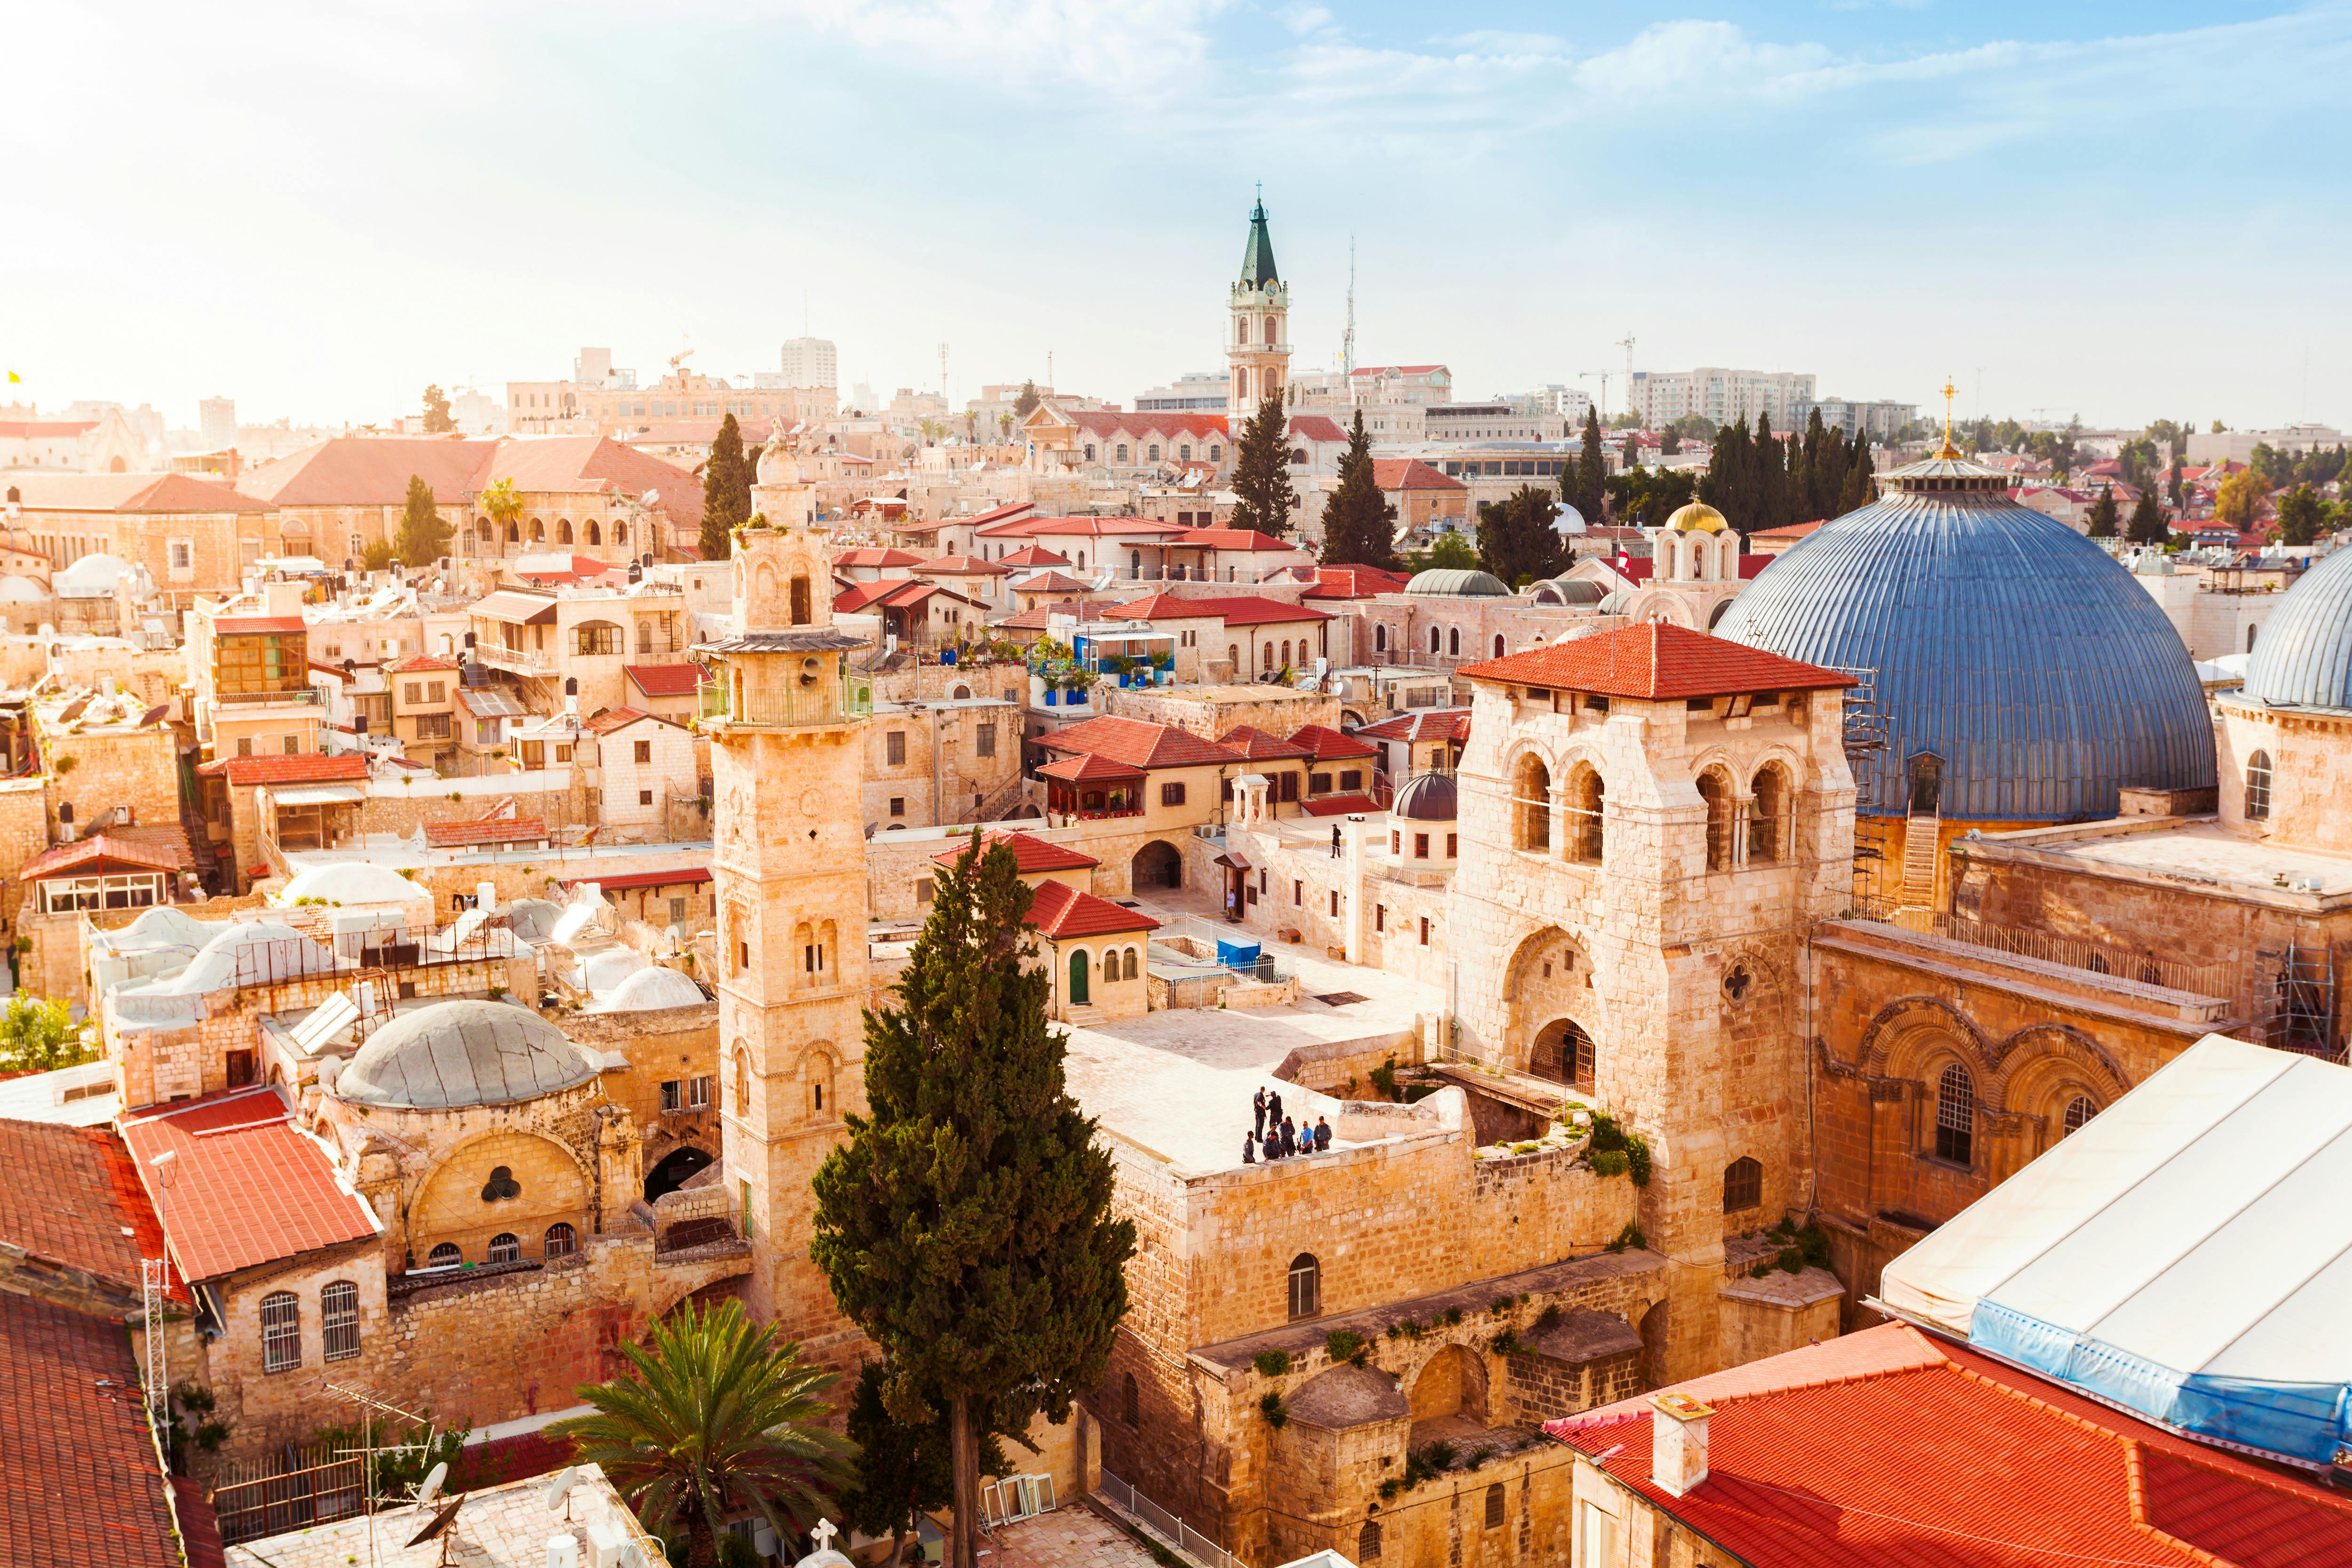 Hebron dual narrative tour: De twee kanten van Hebron